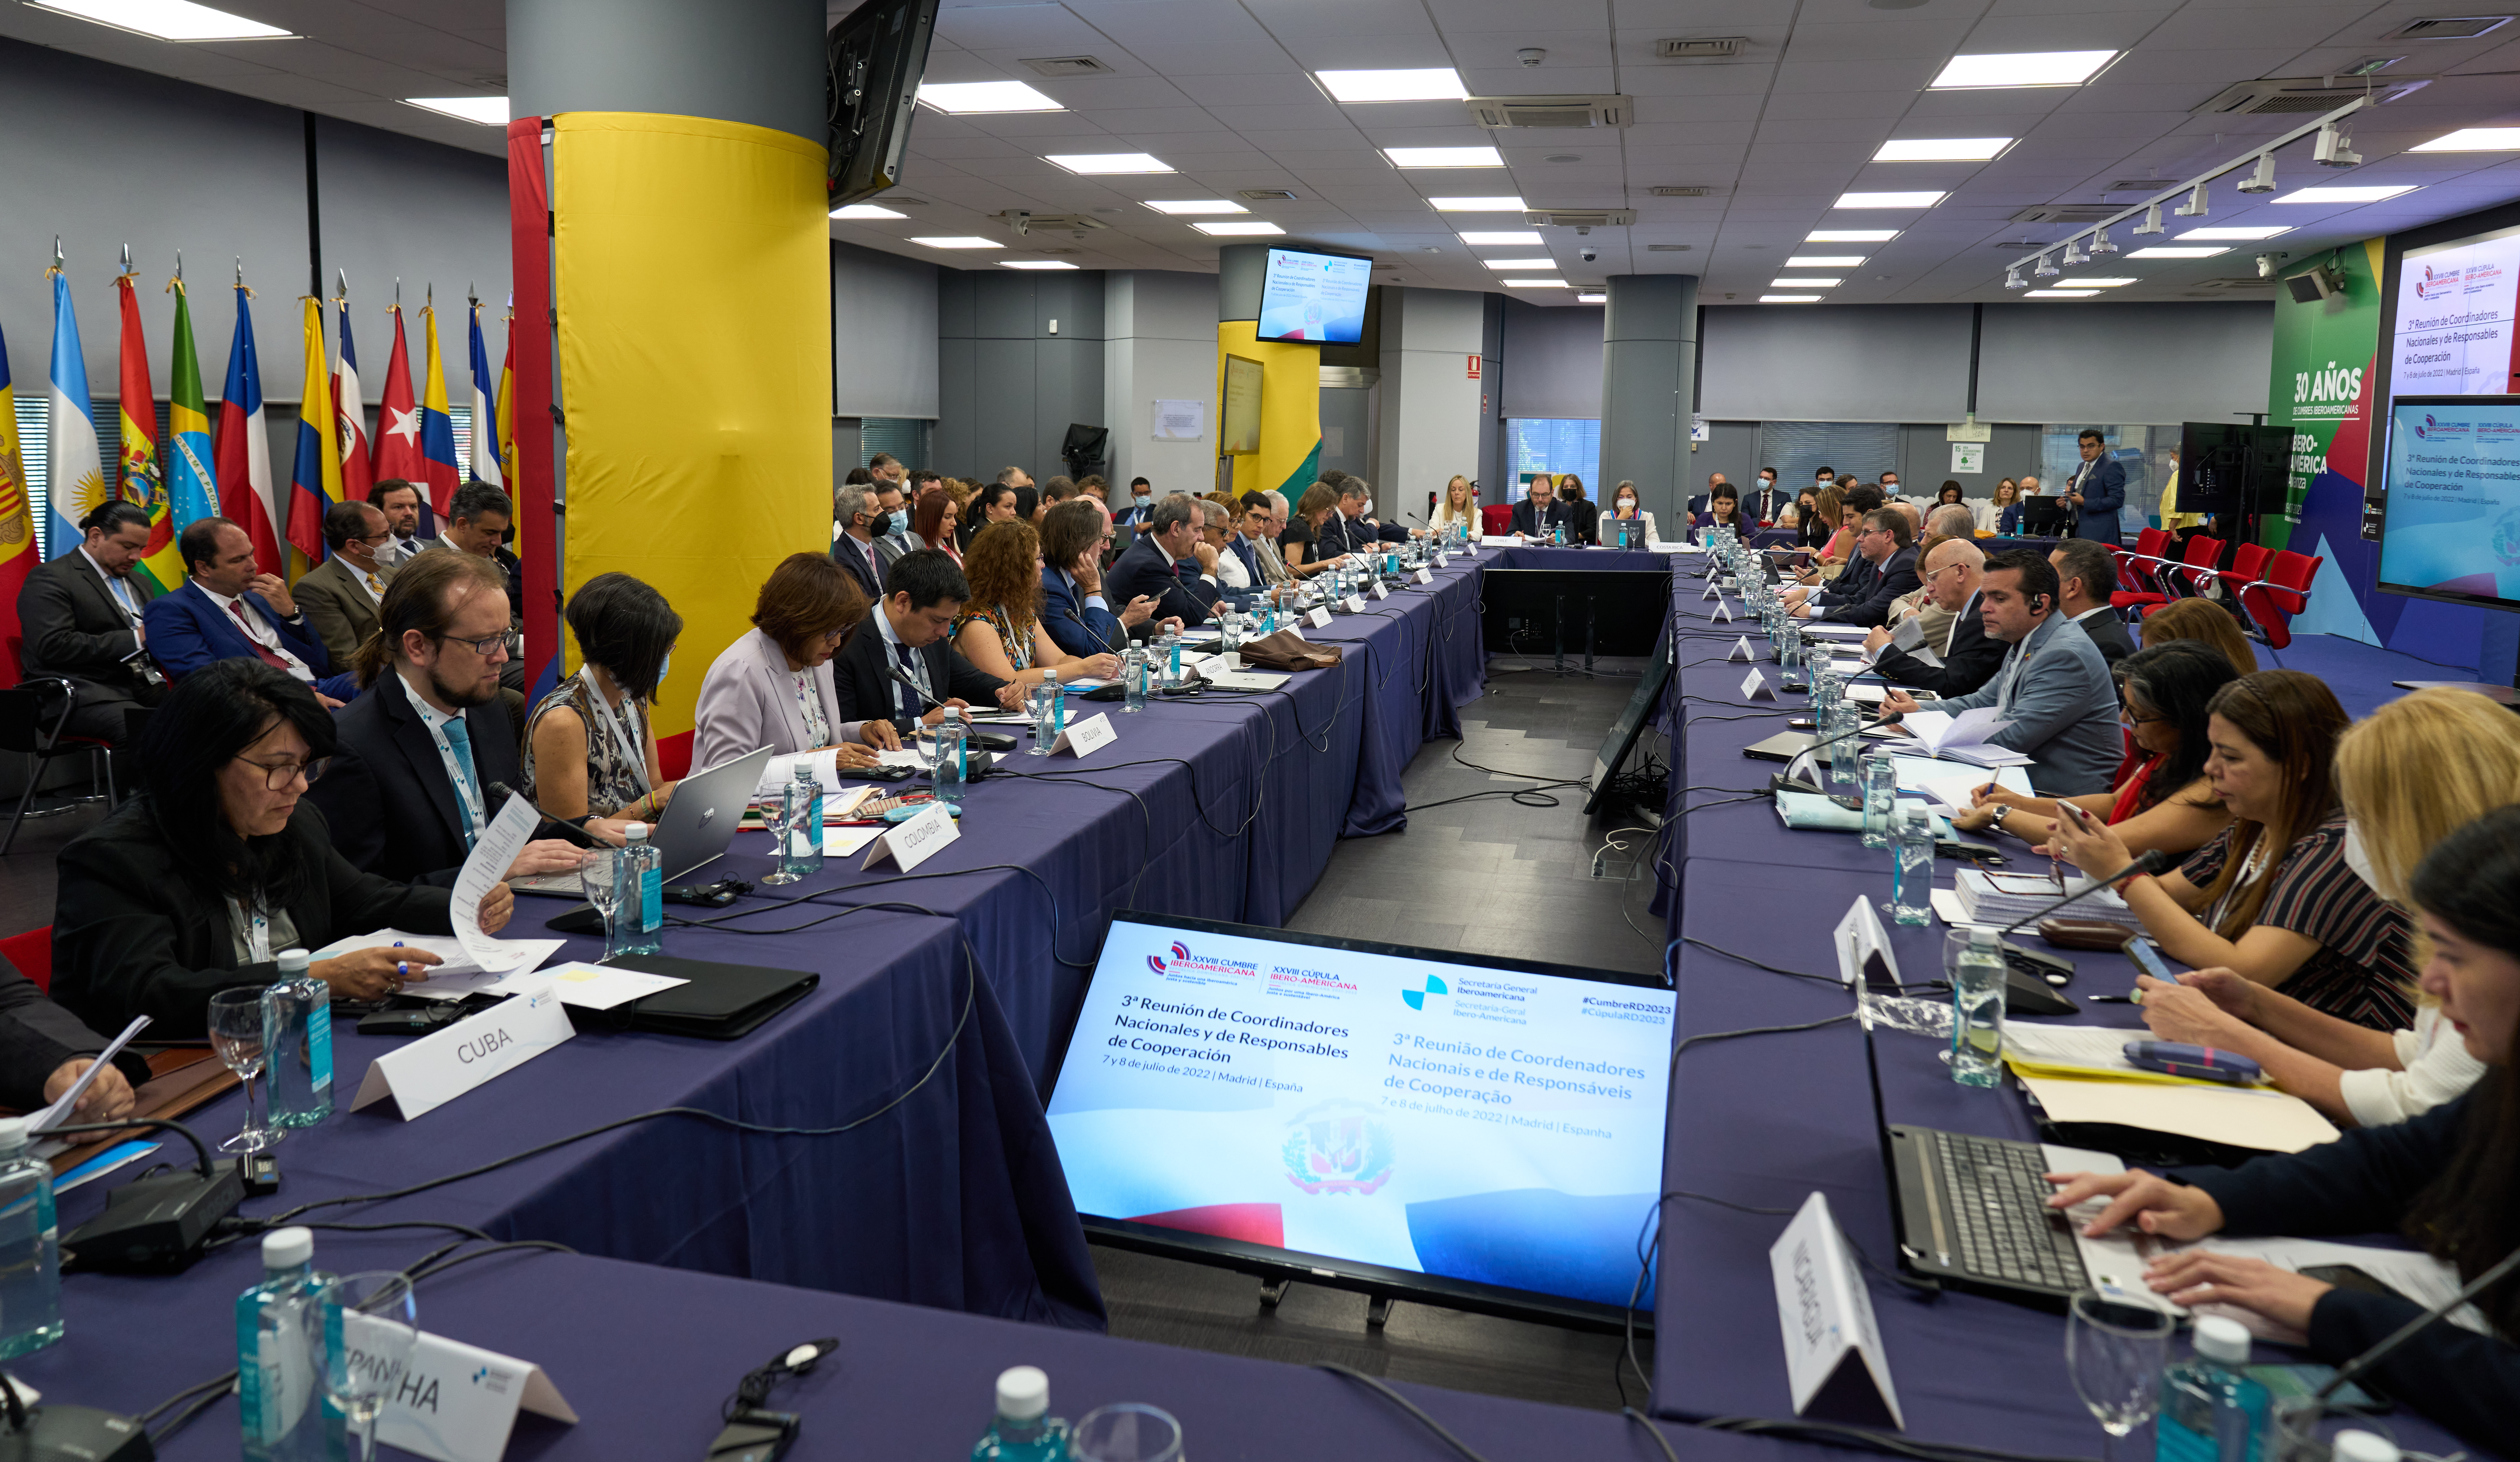 El secretario general de la OEI participa en la III Reunión de Coordinadores Nacionales y Responsables de Cooperación que organiza la SEGIB 